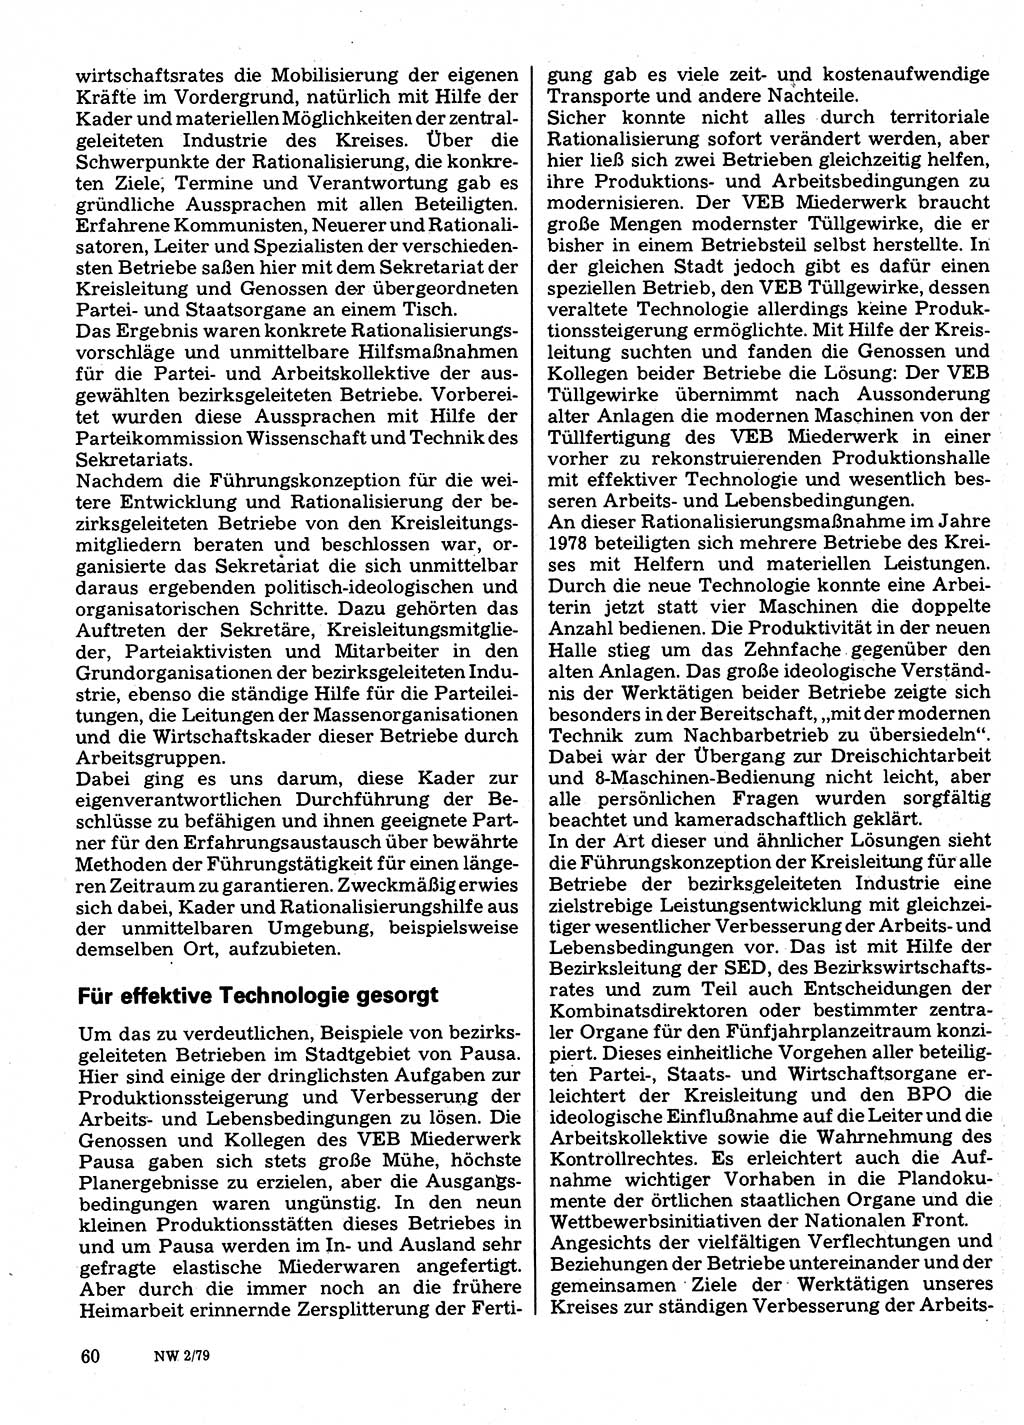 Neuer Weg (NW), Organ des Zentralkomitees (ZK) der SED (Sozialistische Einheitspartei Deutschlands) für Fragen des Parteilebens, 34. Jahrgang [Deutsche Demokratische Republik (DDR)] 1979, Seite 60 (NW ZK SED DDR 1979, S. 60)